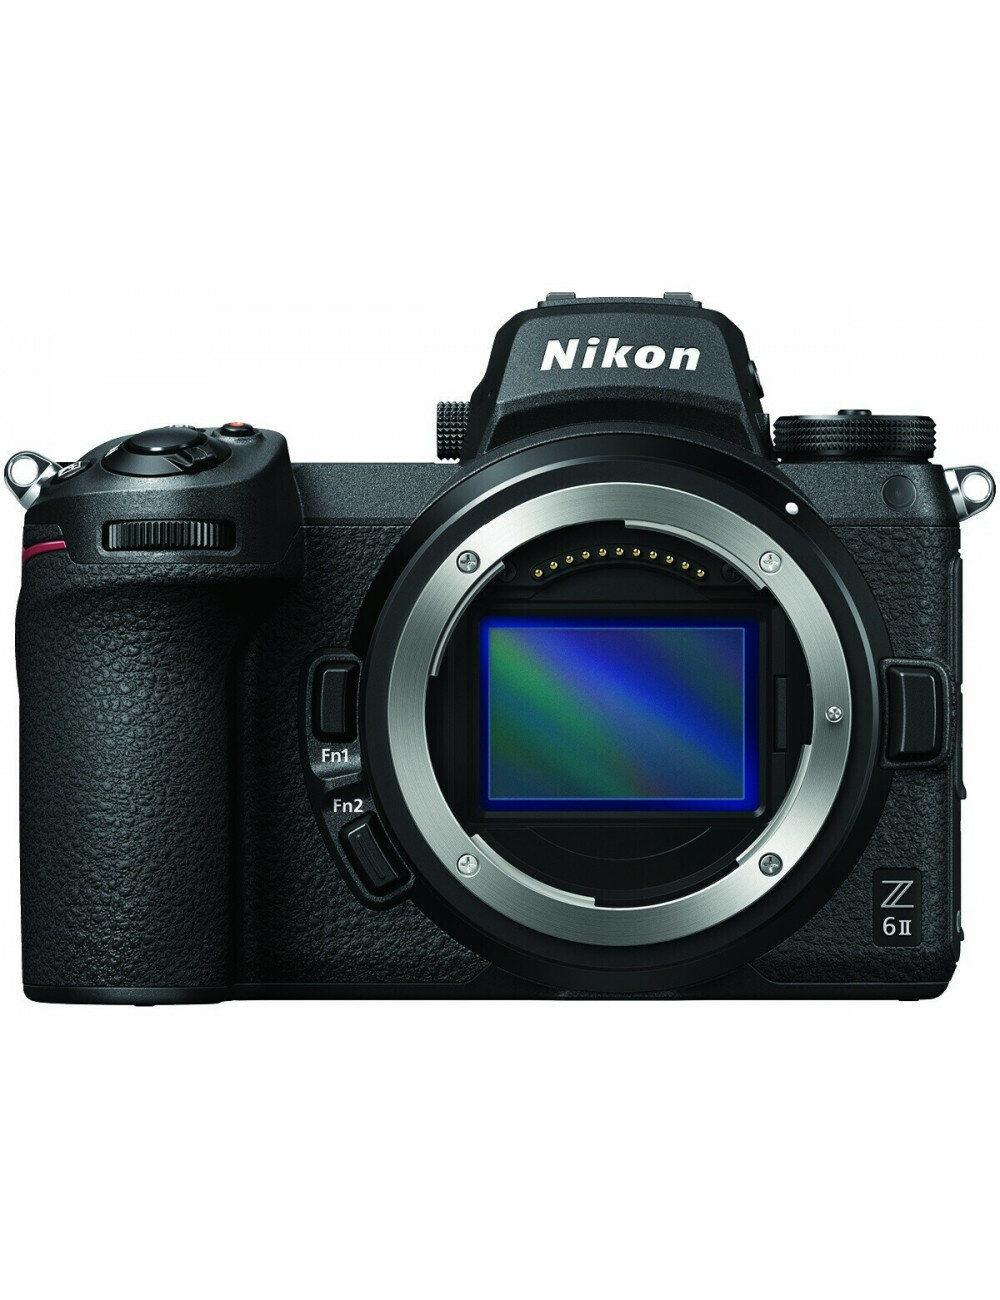 Maggiori informazioni su "Nuovi firmware 1.62 per Nikon Z6 II e Nikon Z7 II"